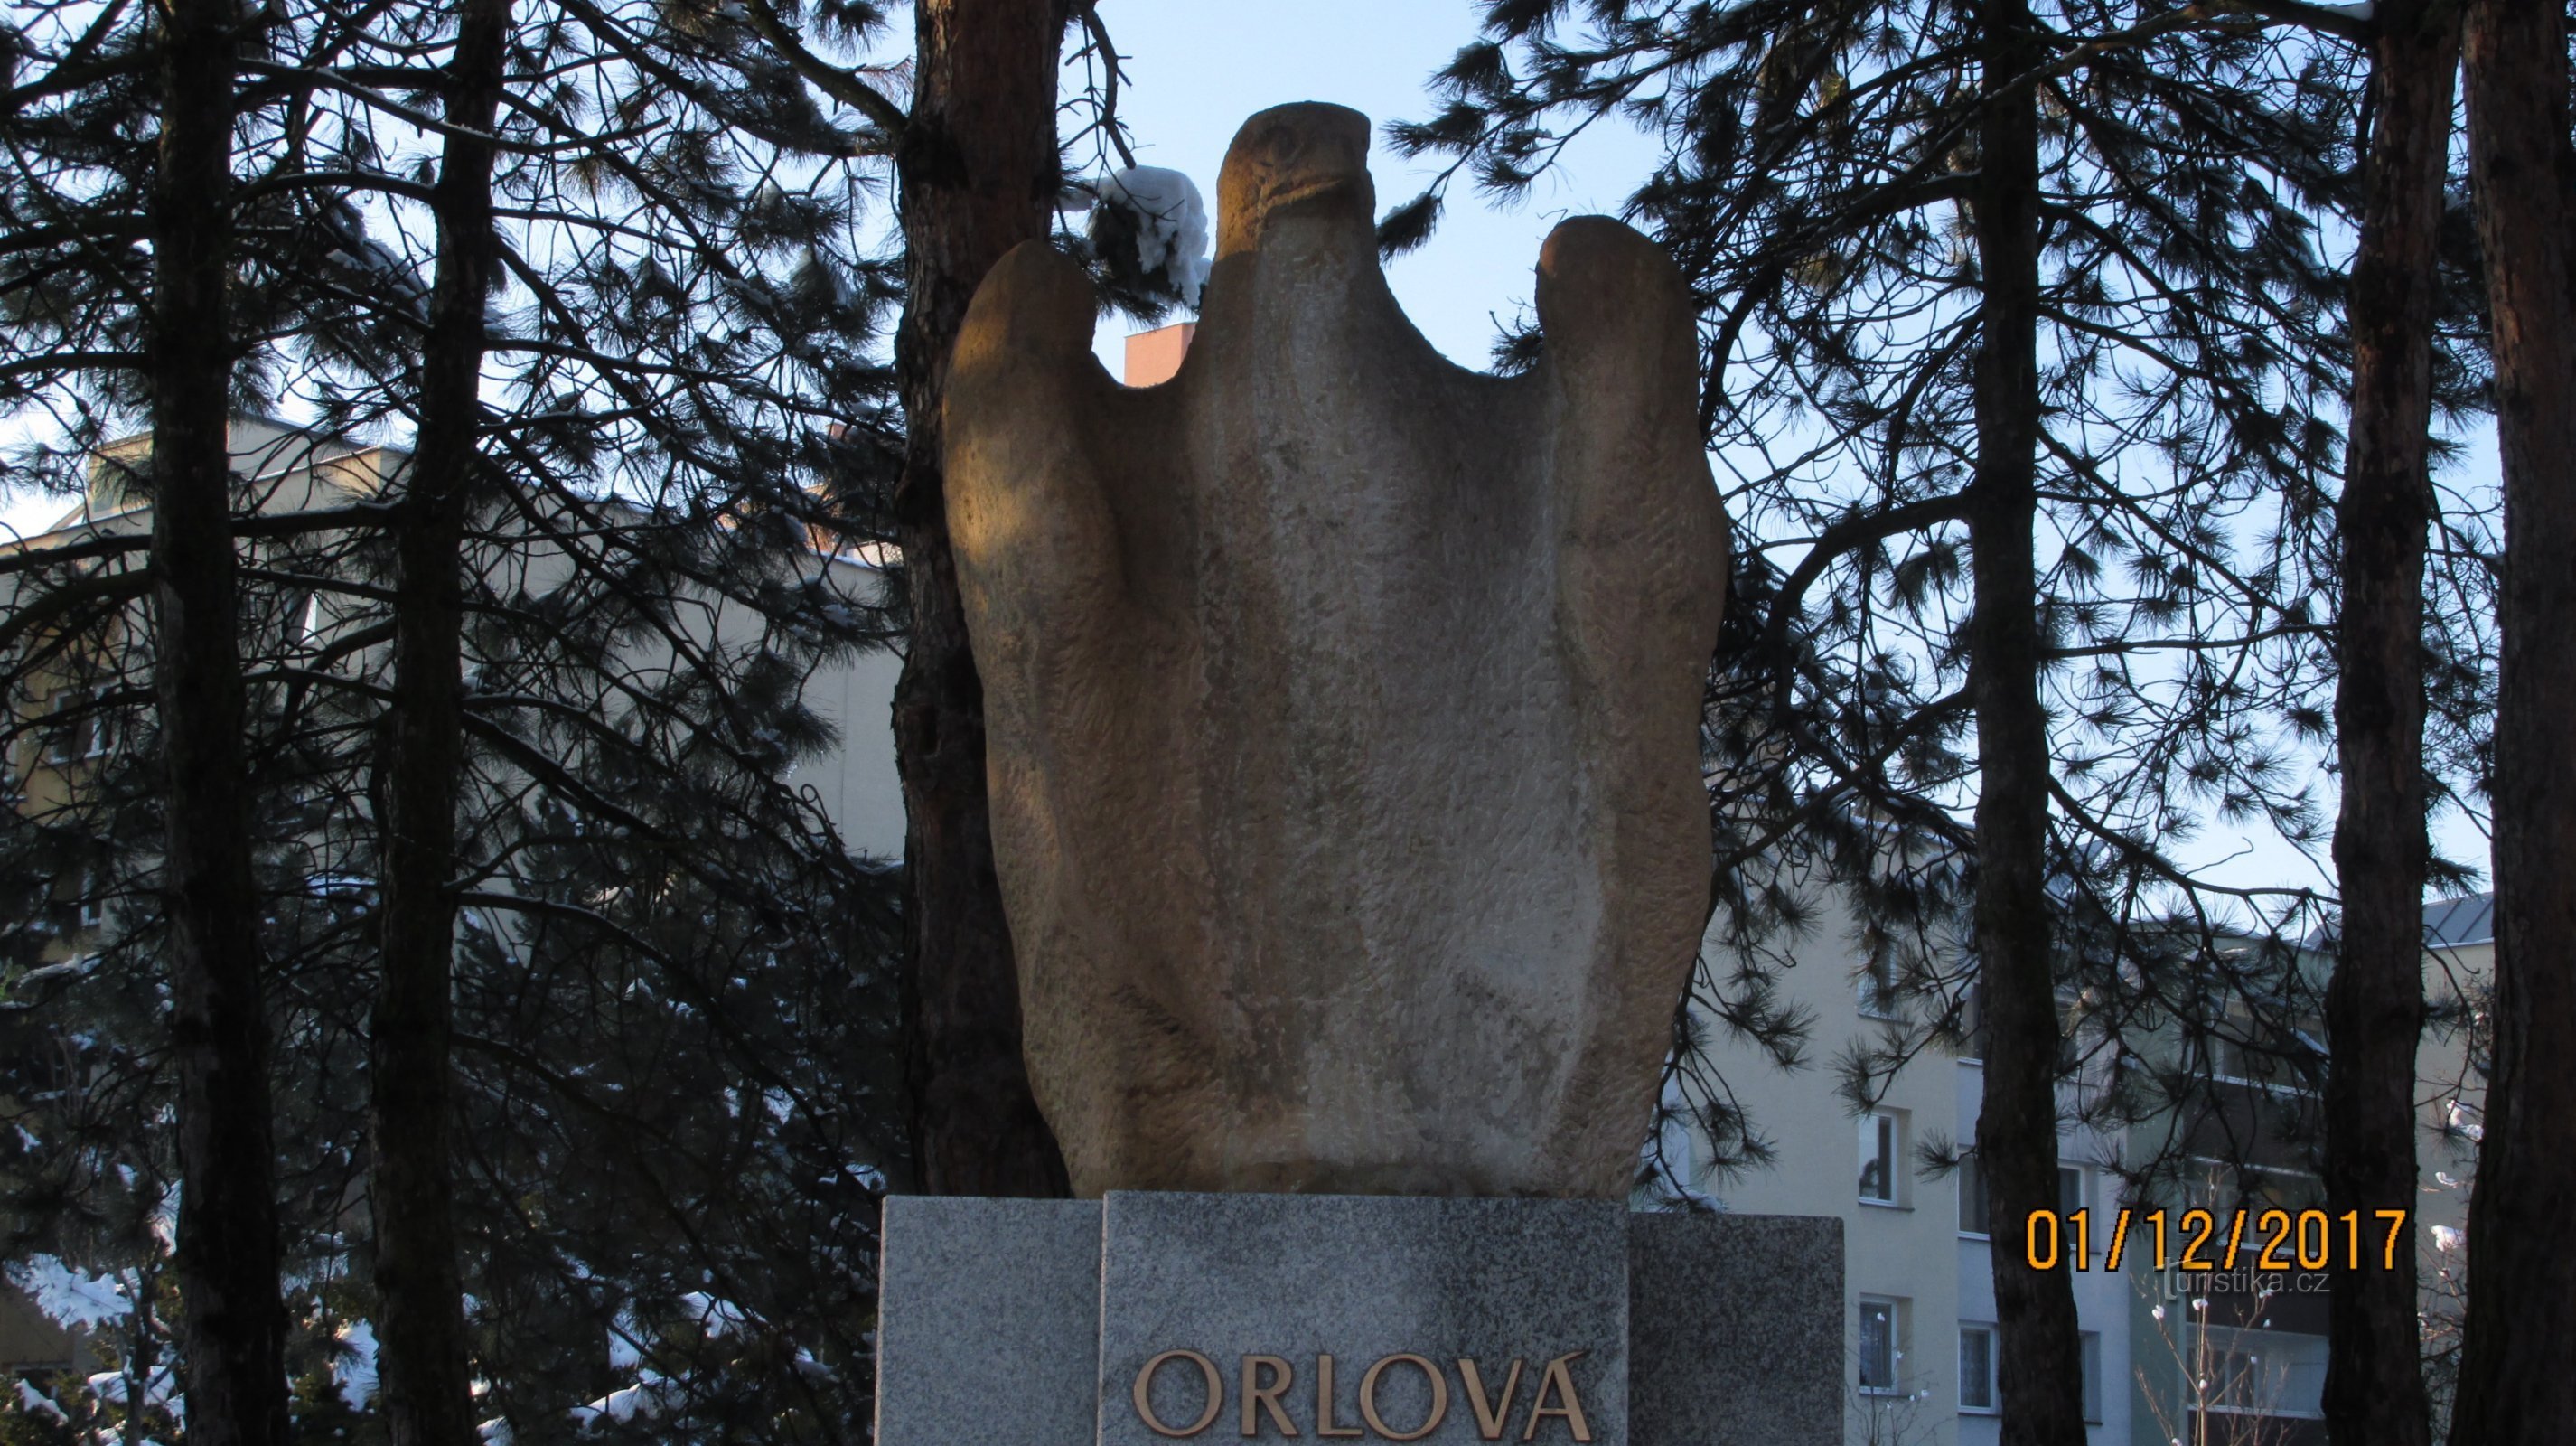 Orlovan Orlice-patsas loistaa jälleen